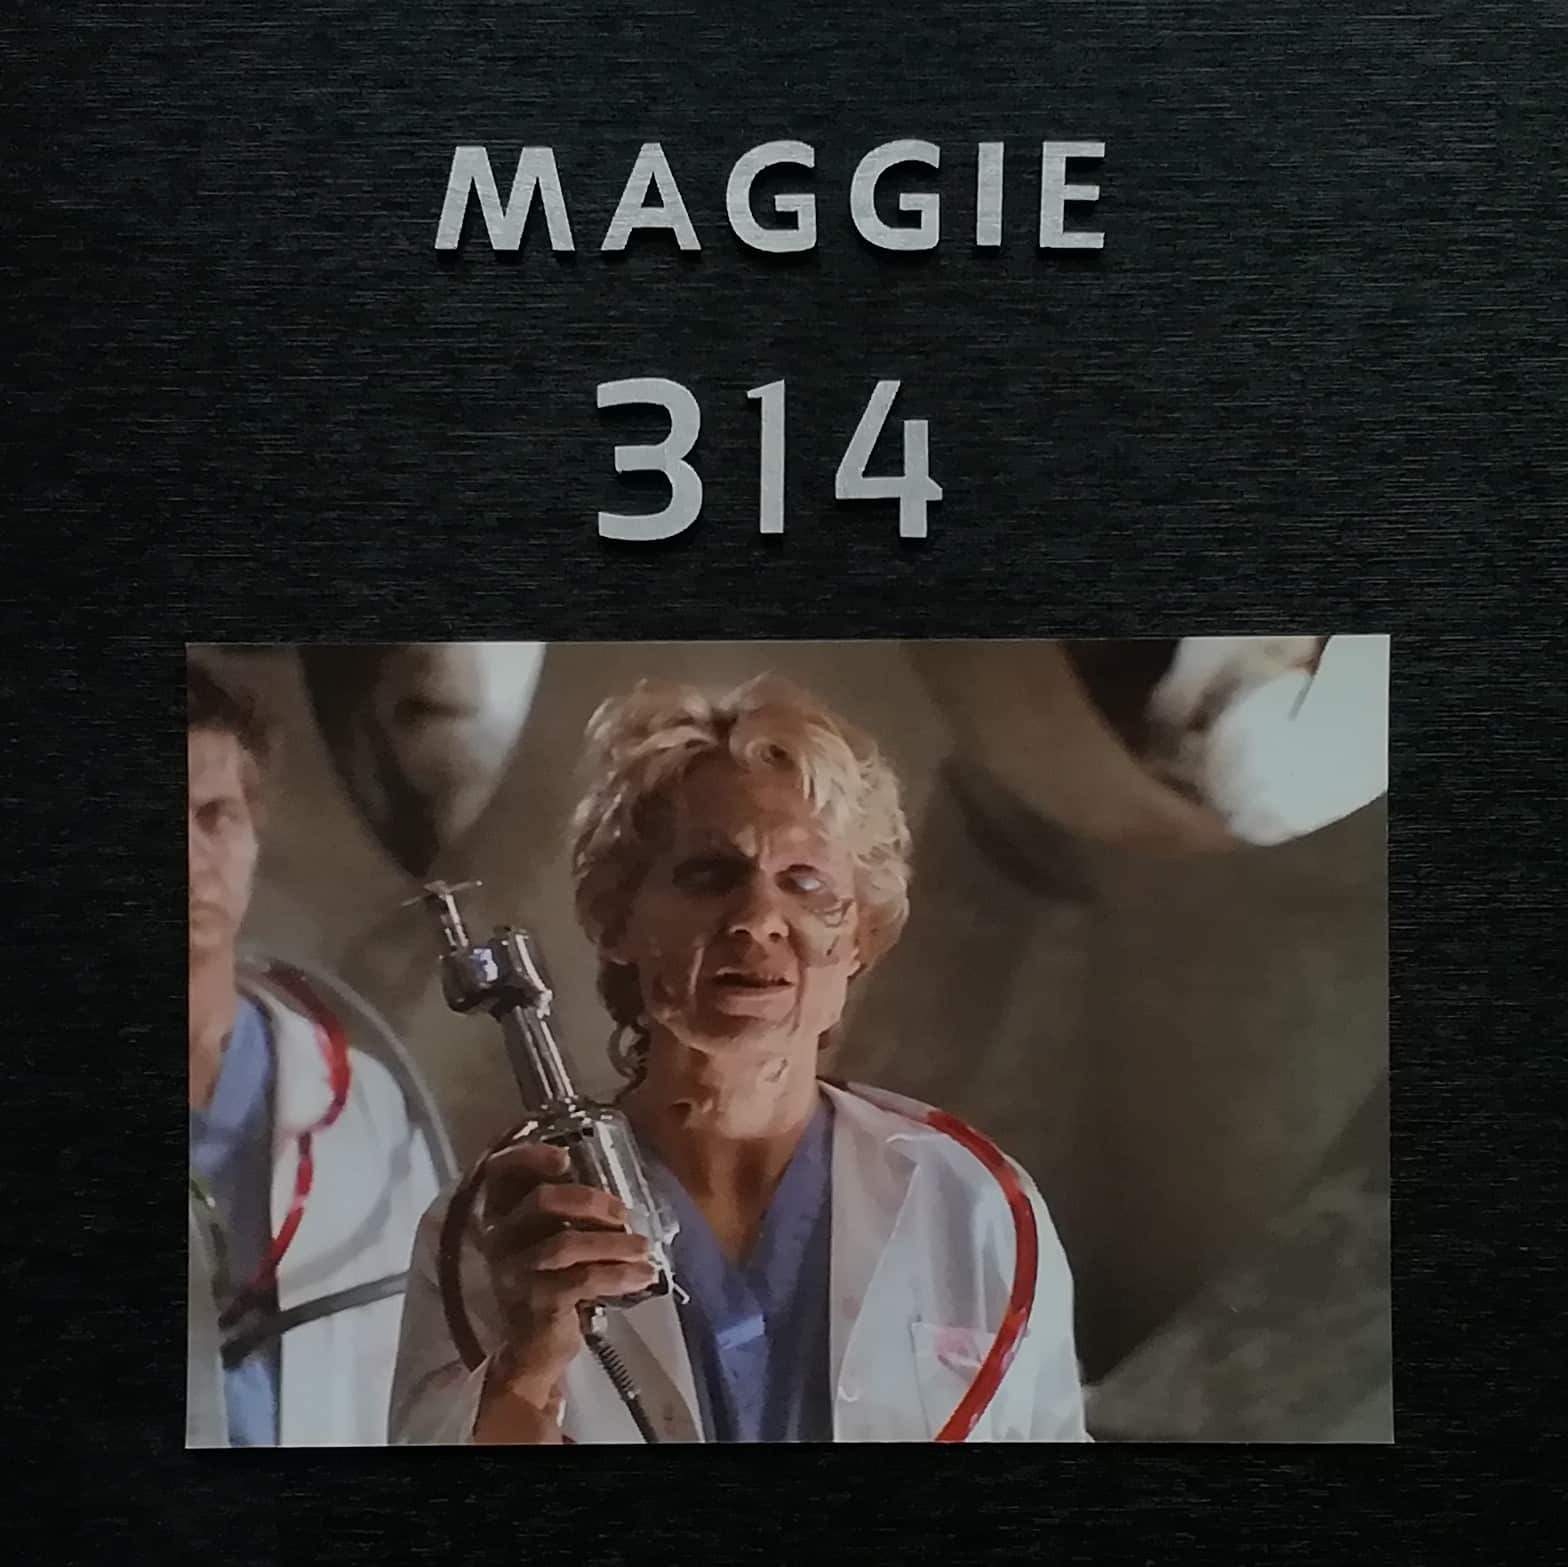 Sur cette photo, on peut voir Maggie Walsh en tant que zombie alors que le prénom "Maggie" et le nombre "314" sont écrits au-dessus d'elle.